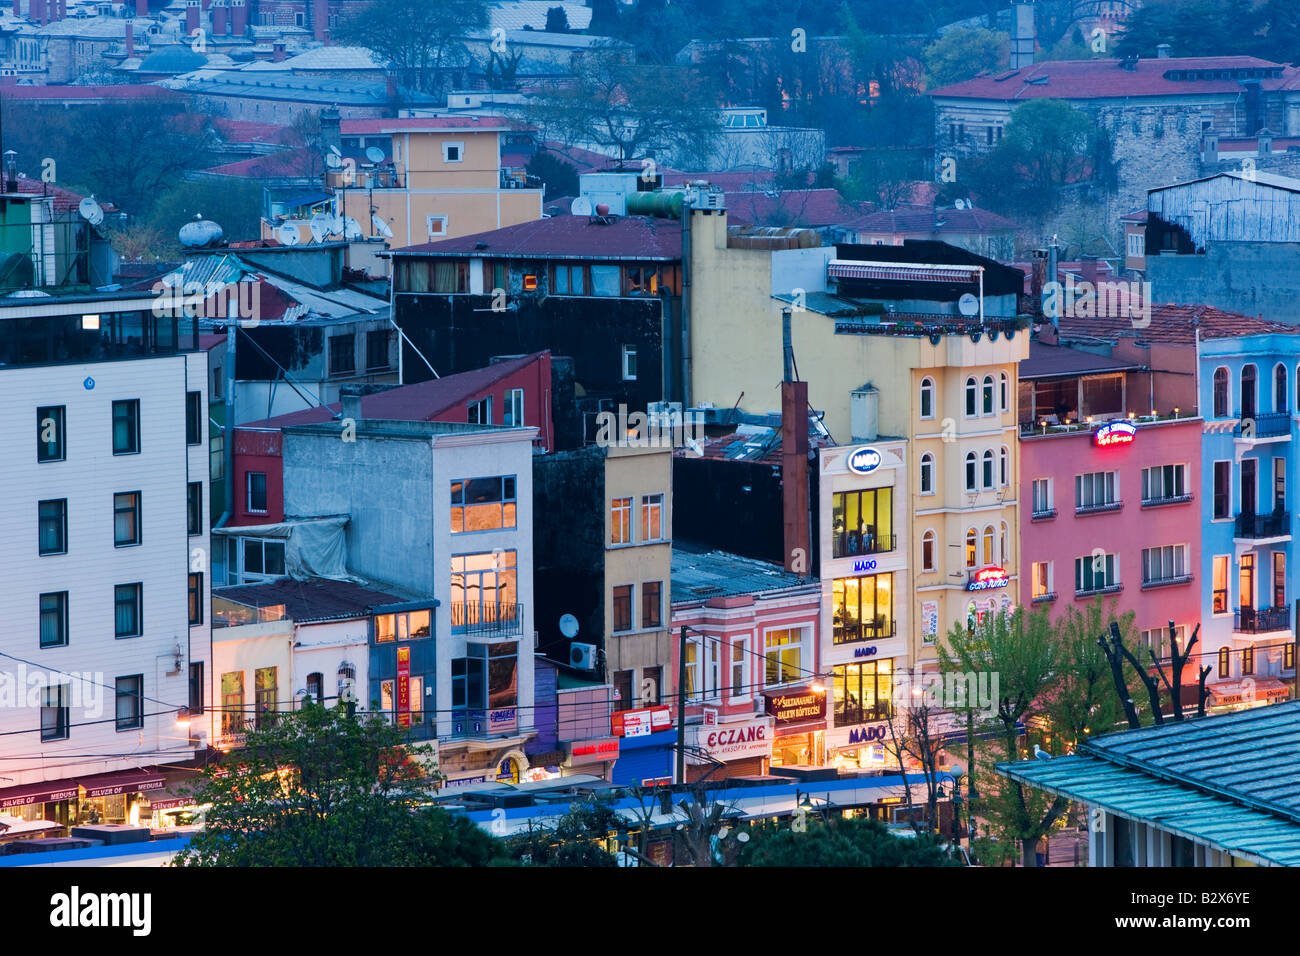 Erhöhten Blick über Altstadt Sultanahmet Istanbul ein UNESCO bezeichnet Weltkulturerbe in Istanbul Türkei Stockfoto